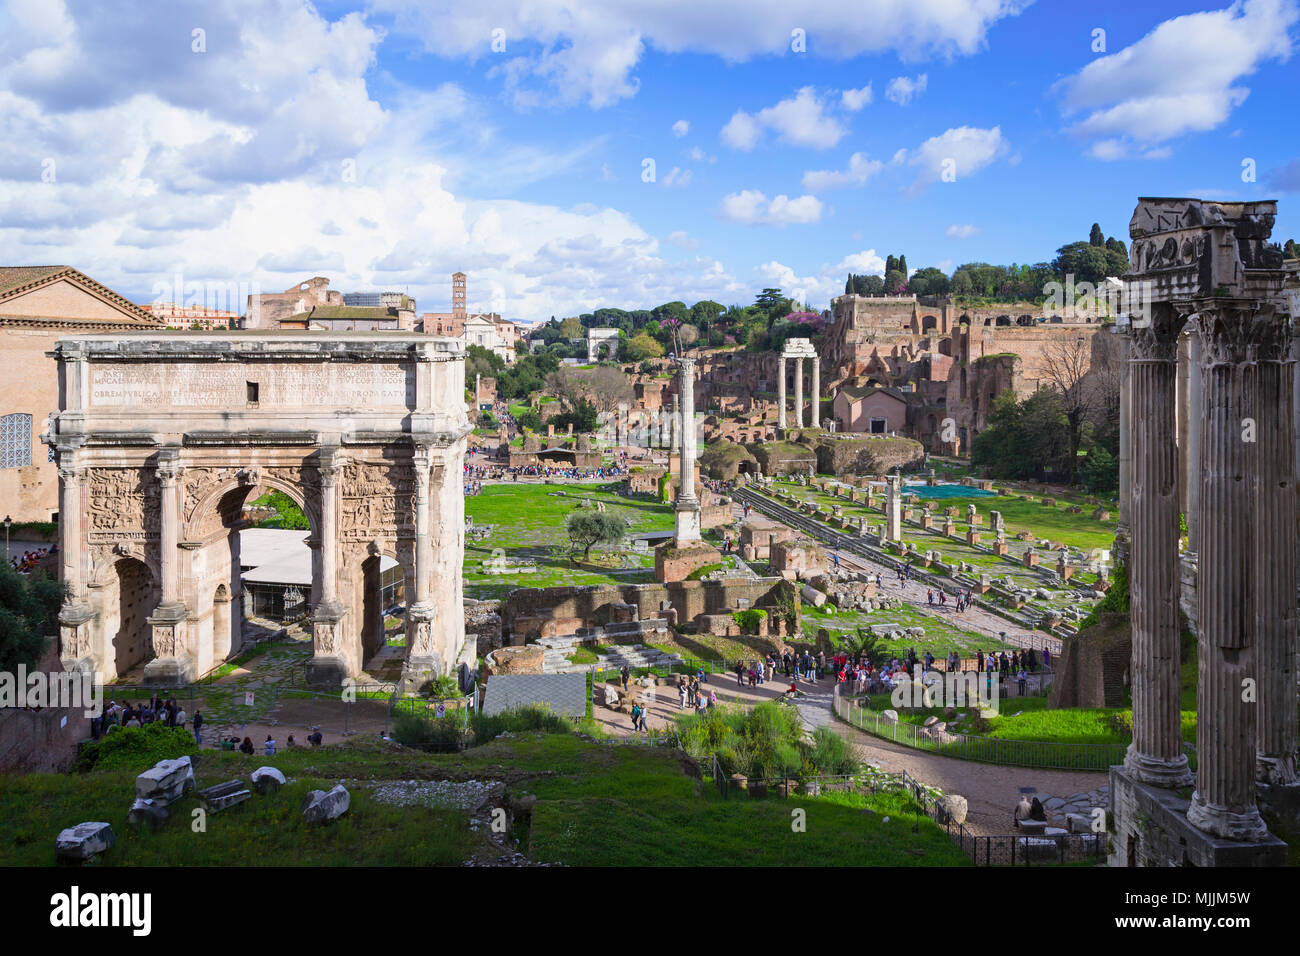 Rome, Italie. Vue d'ensemble sur le Forum Romain. Ce forum s'inscrit dans le centre historique de Rome qui est un UNESCO World Heritage Site. Banque D'Images